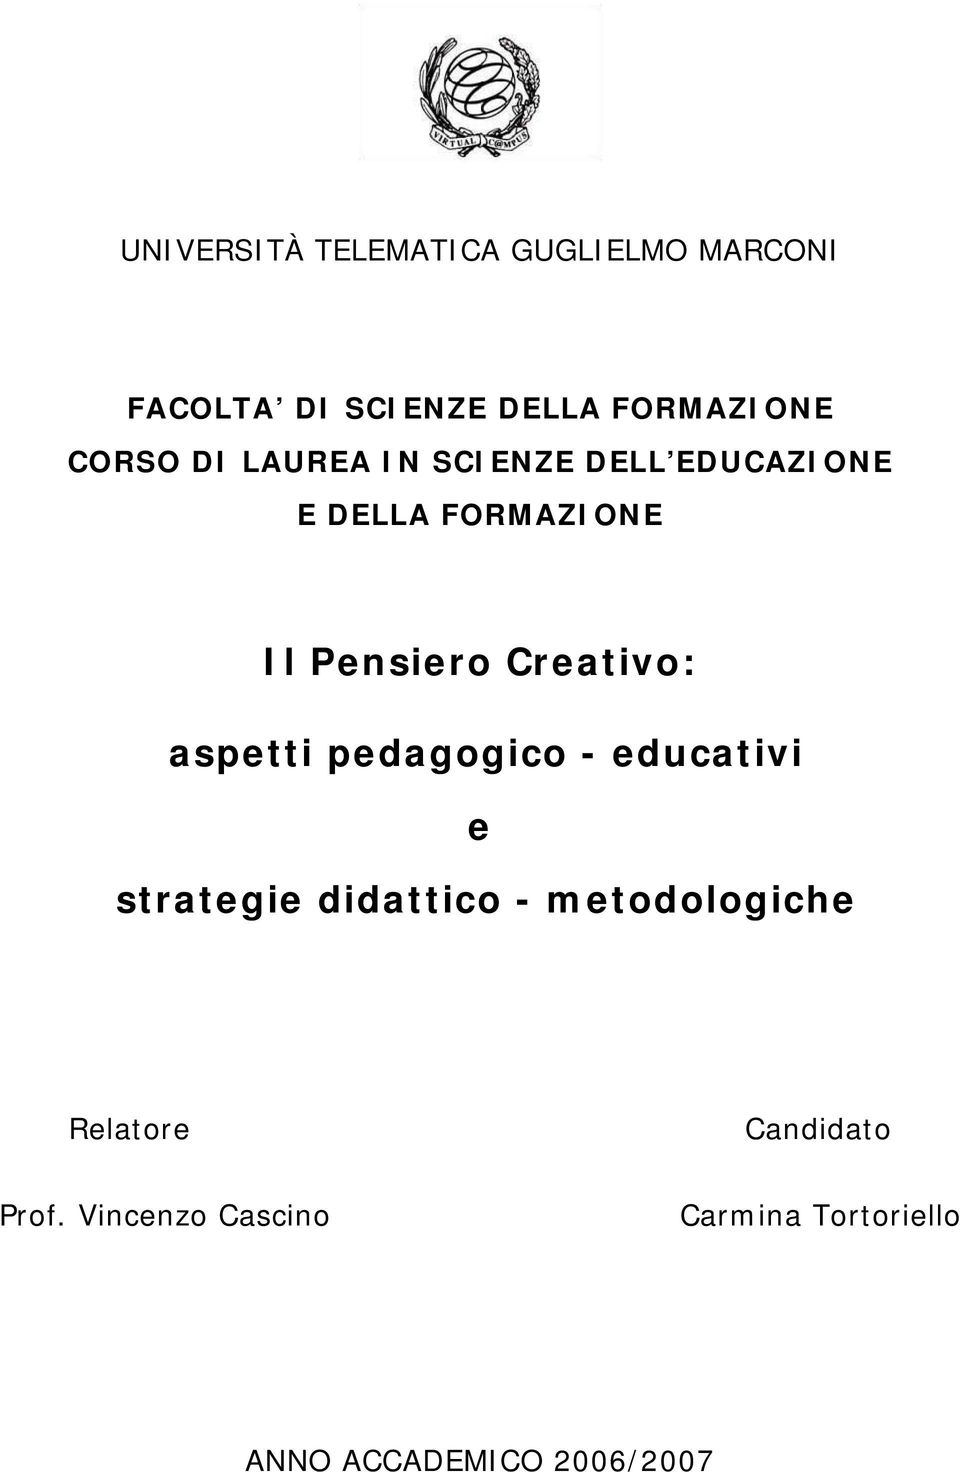 Creativo: aspetti pedagogico - educativi e strategie didattico - metodologiche